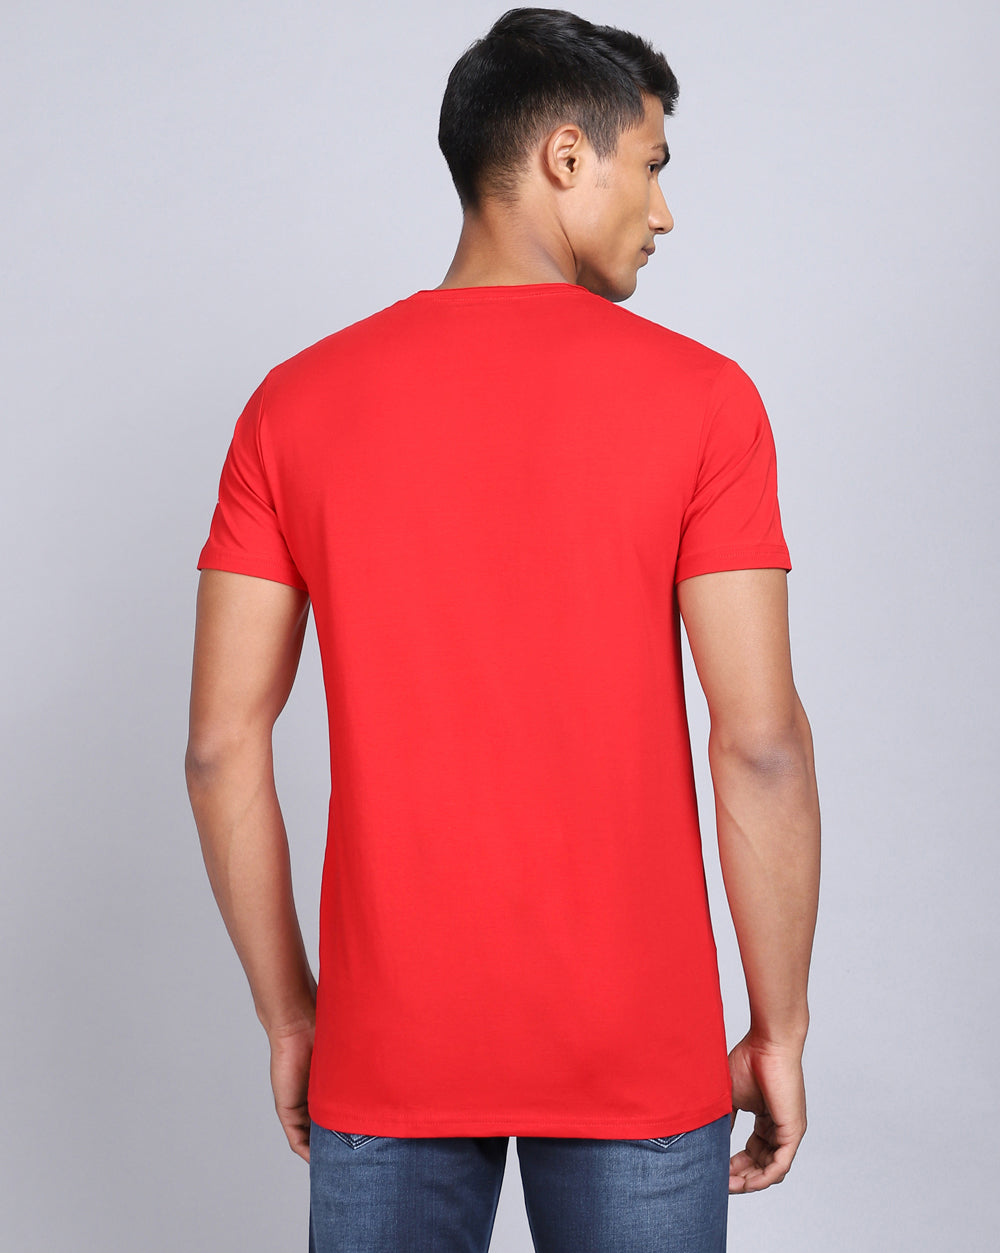 Crewneck Comfort Strech T-Shirt-Red Candy